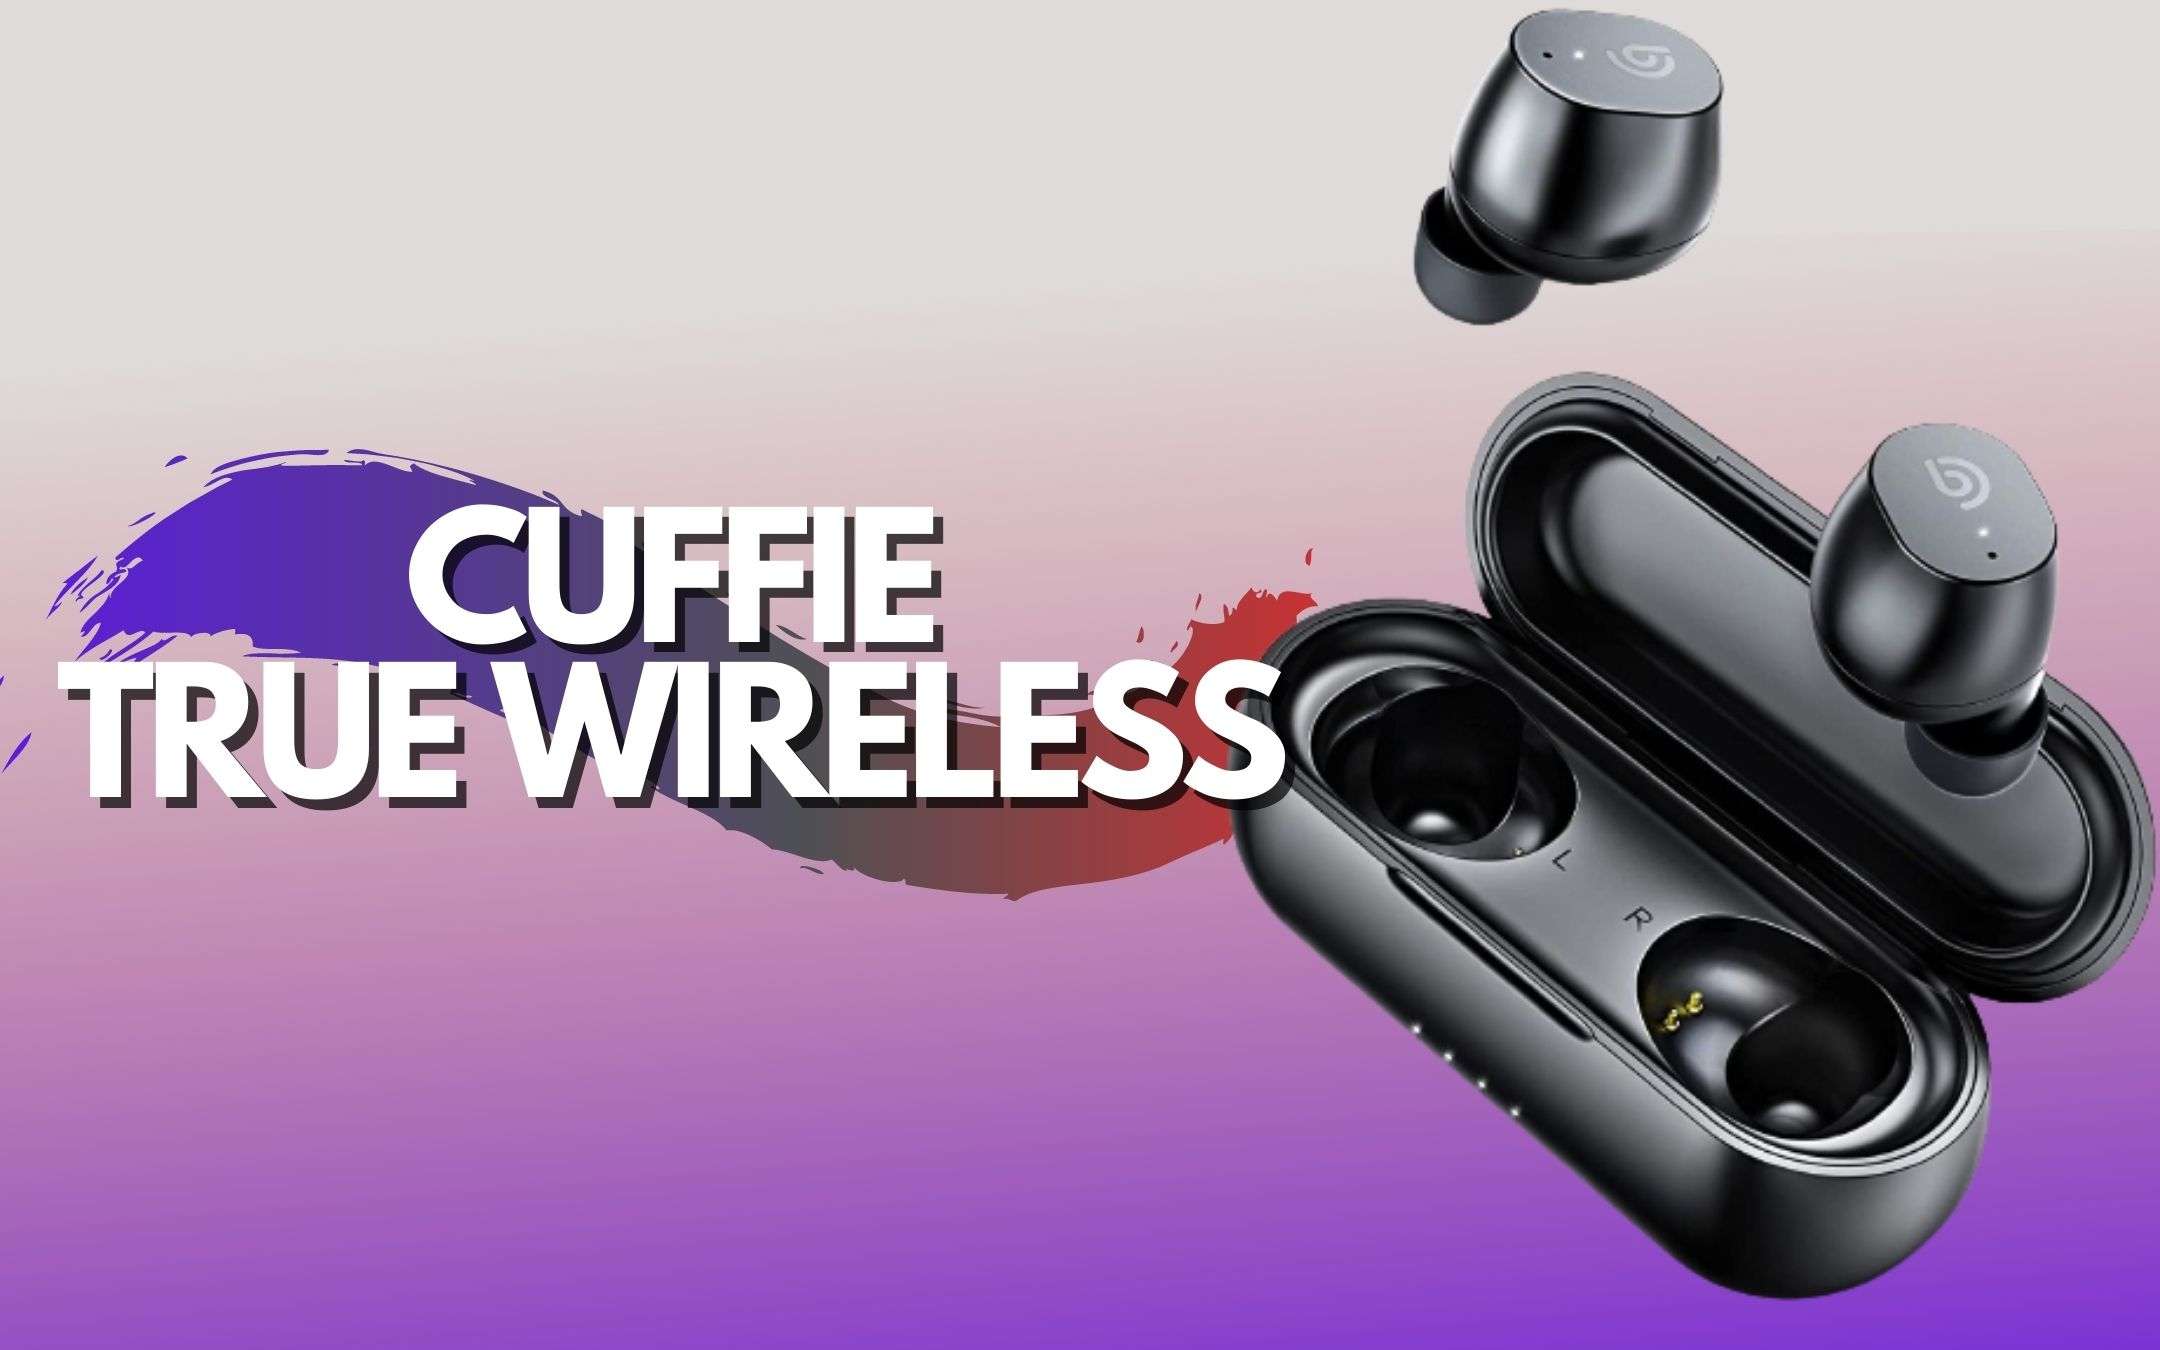 Cuffie true wireless a METÀ PREZZO con coupon